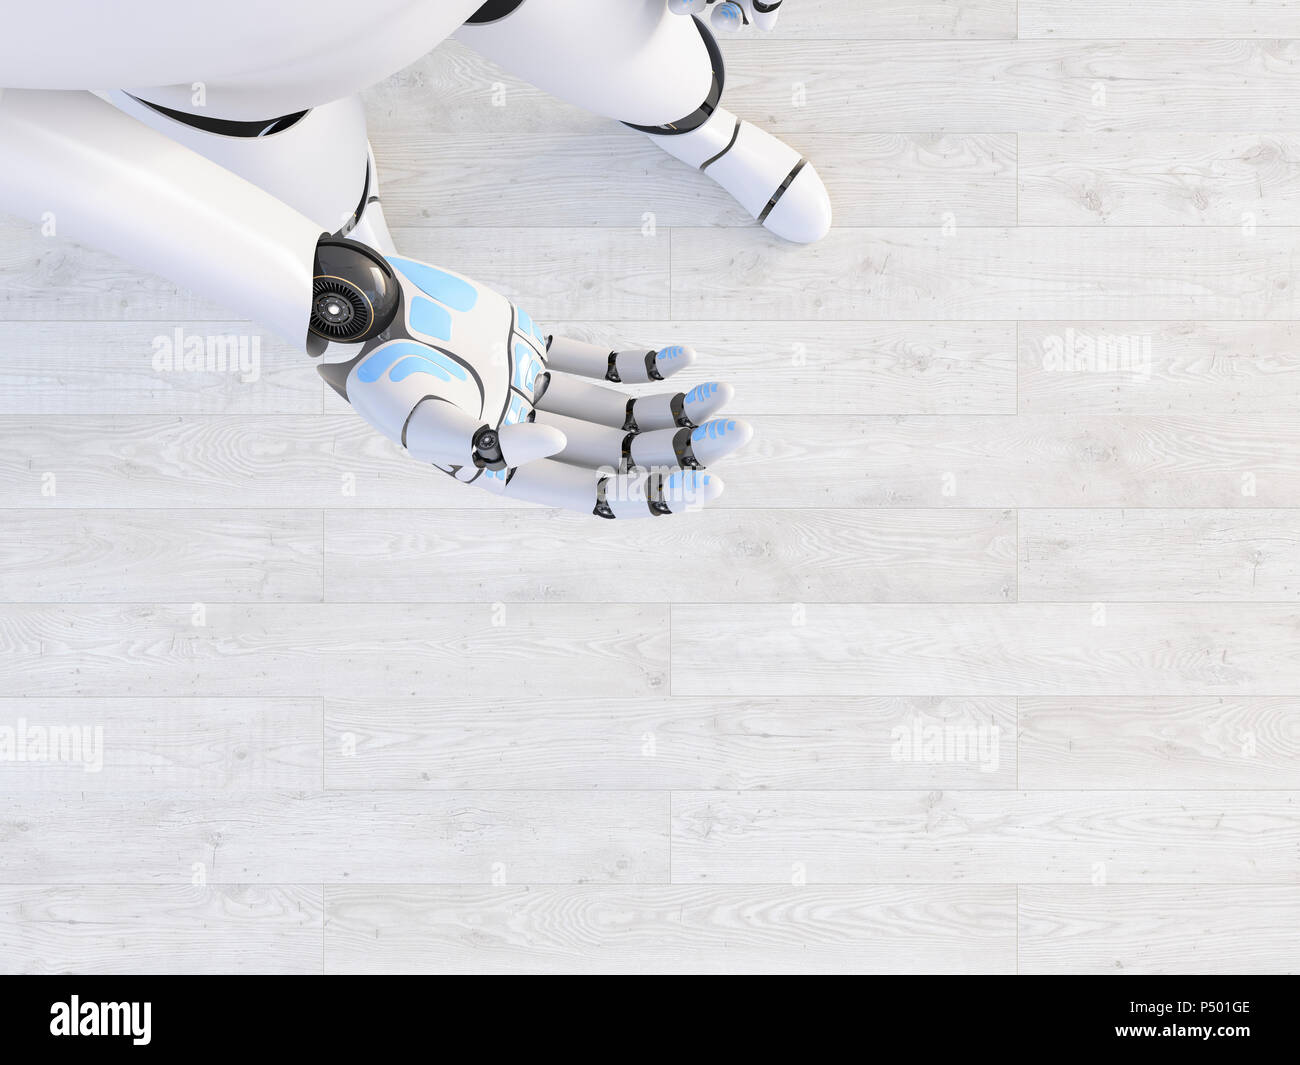 Main d'un robot, le rendu 3D Banque D'Images